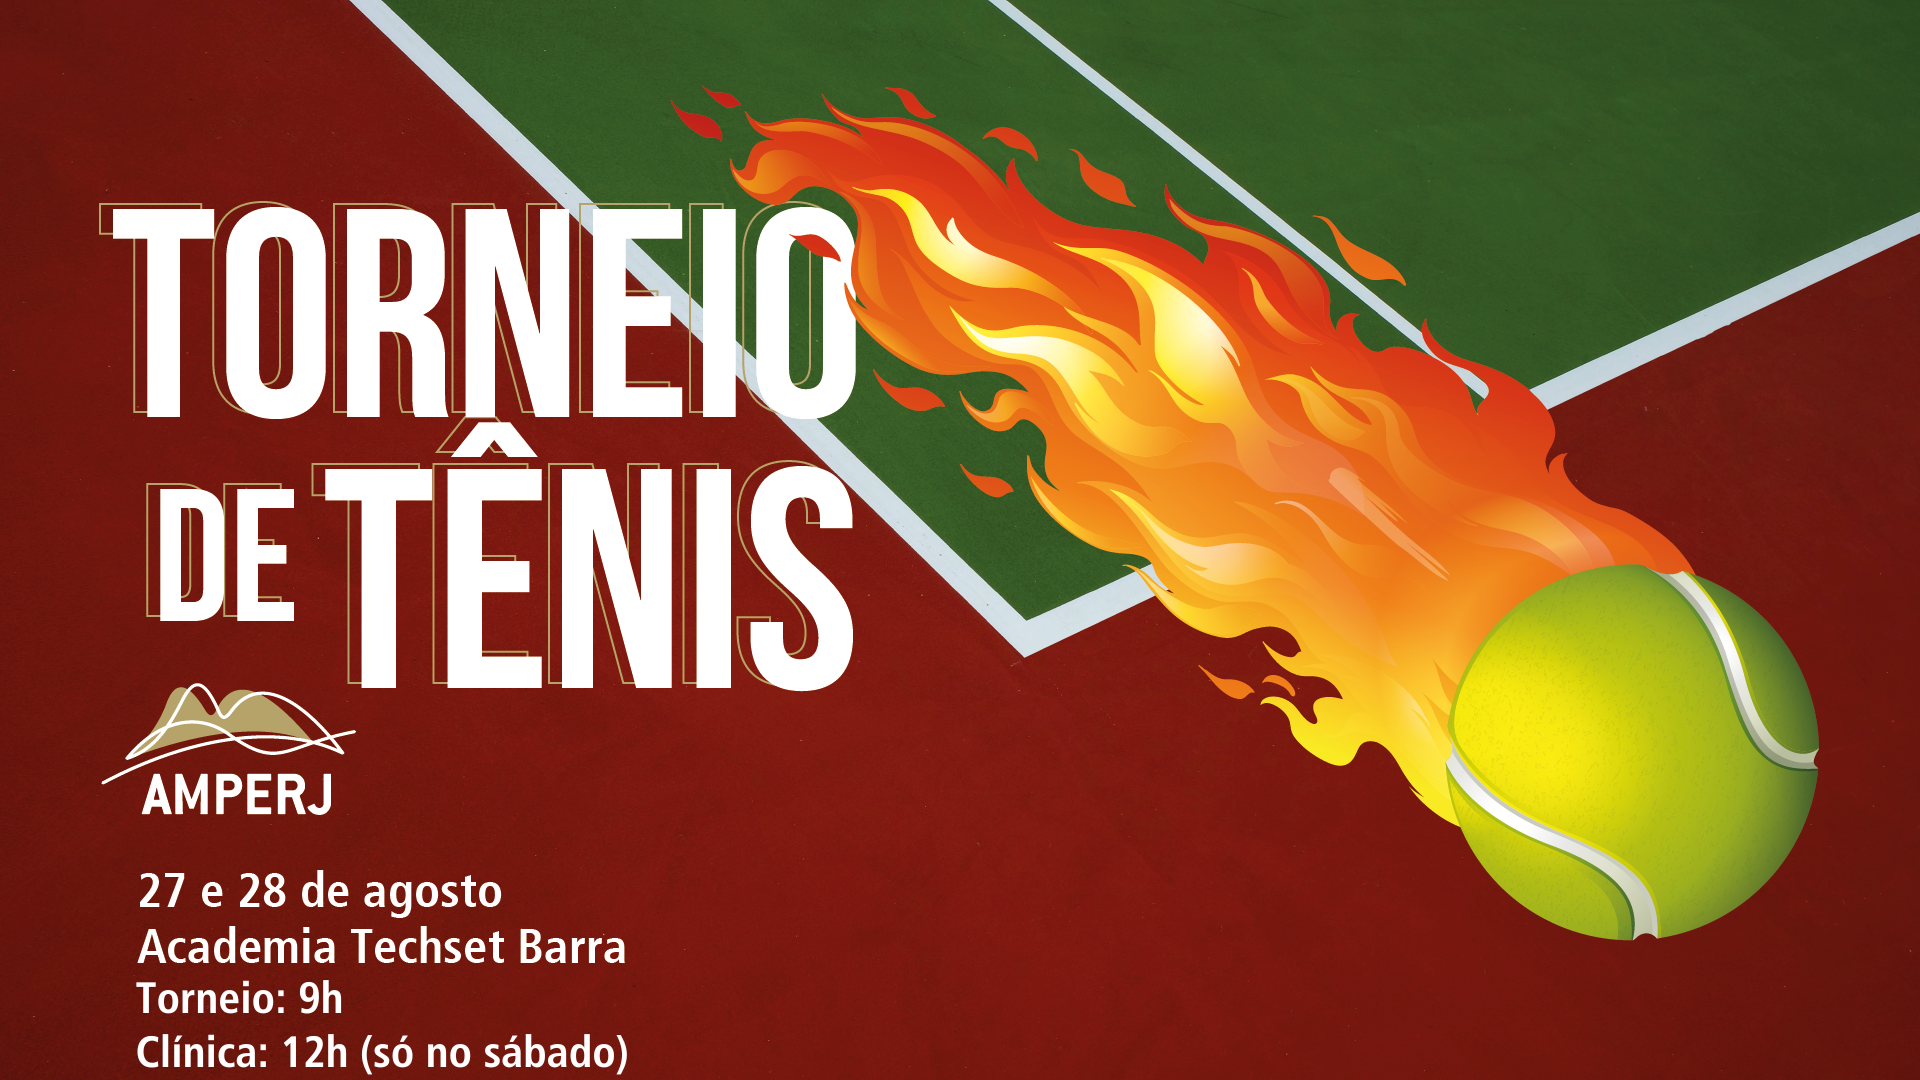 Informações do Torneio Etapa TieBreak Tennis & Fitness - Guarulhos